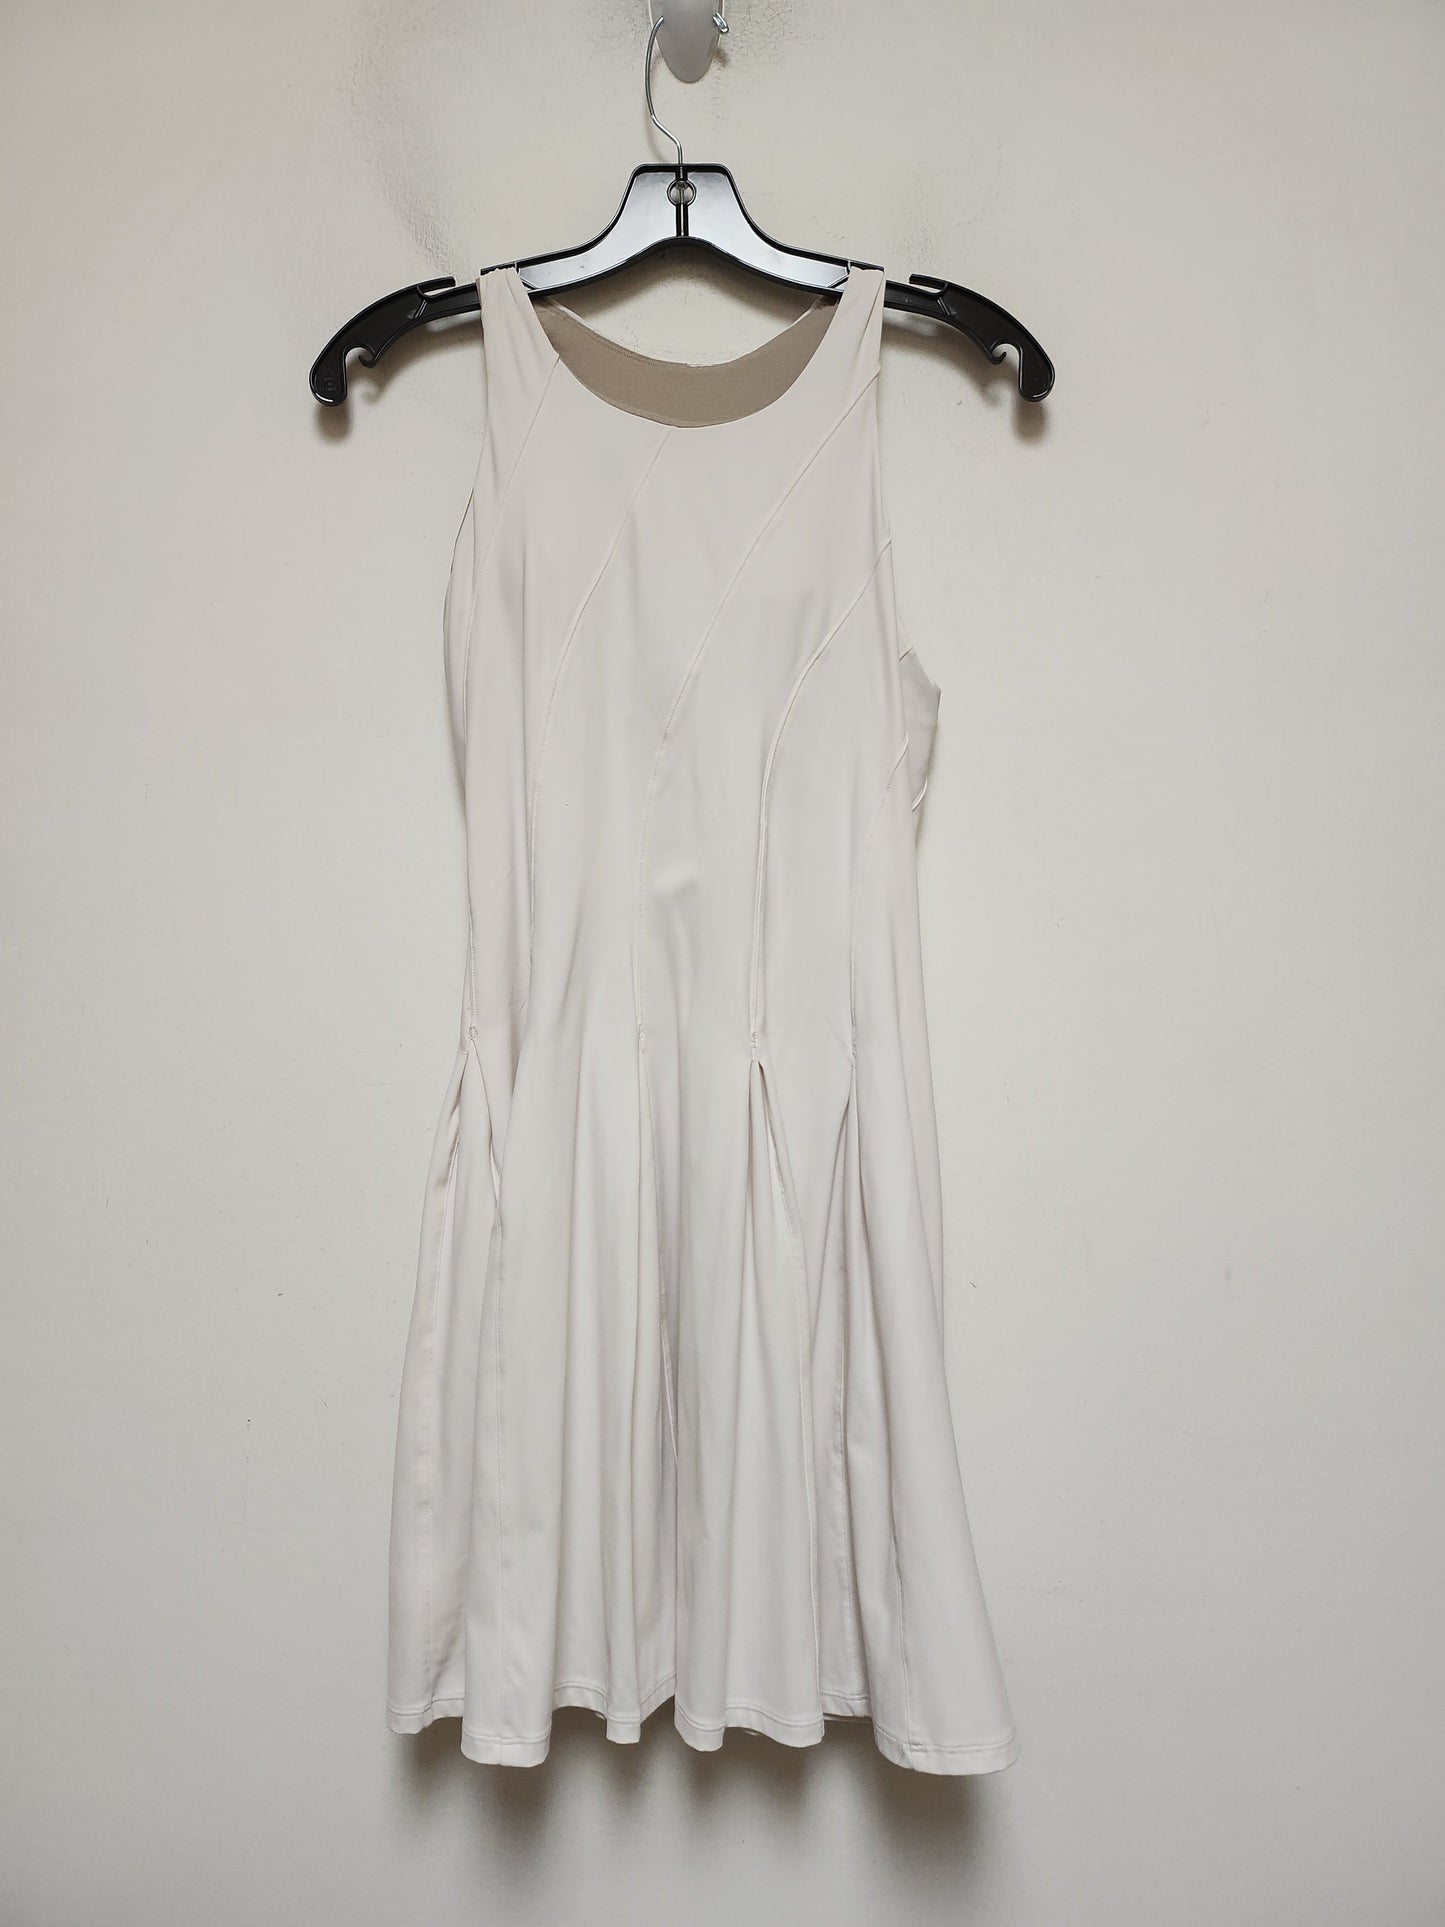 White Athletic Dress Lululemon, Size M